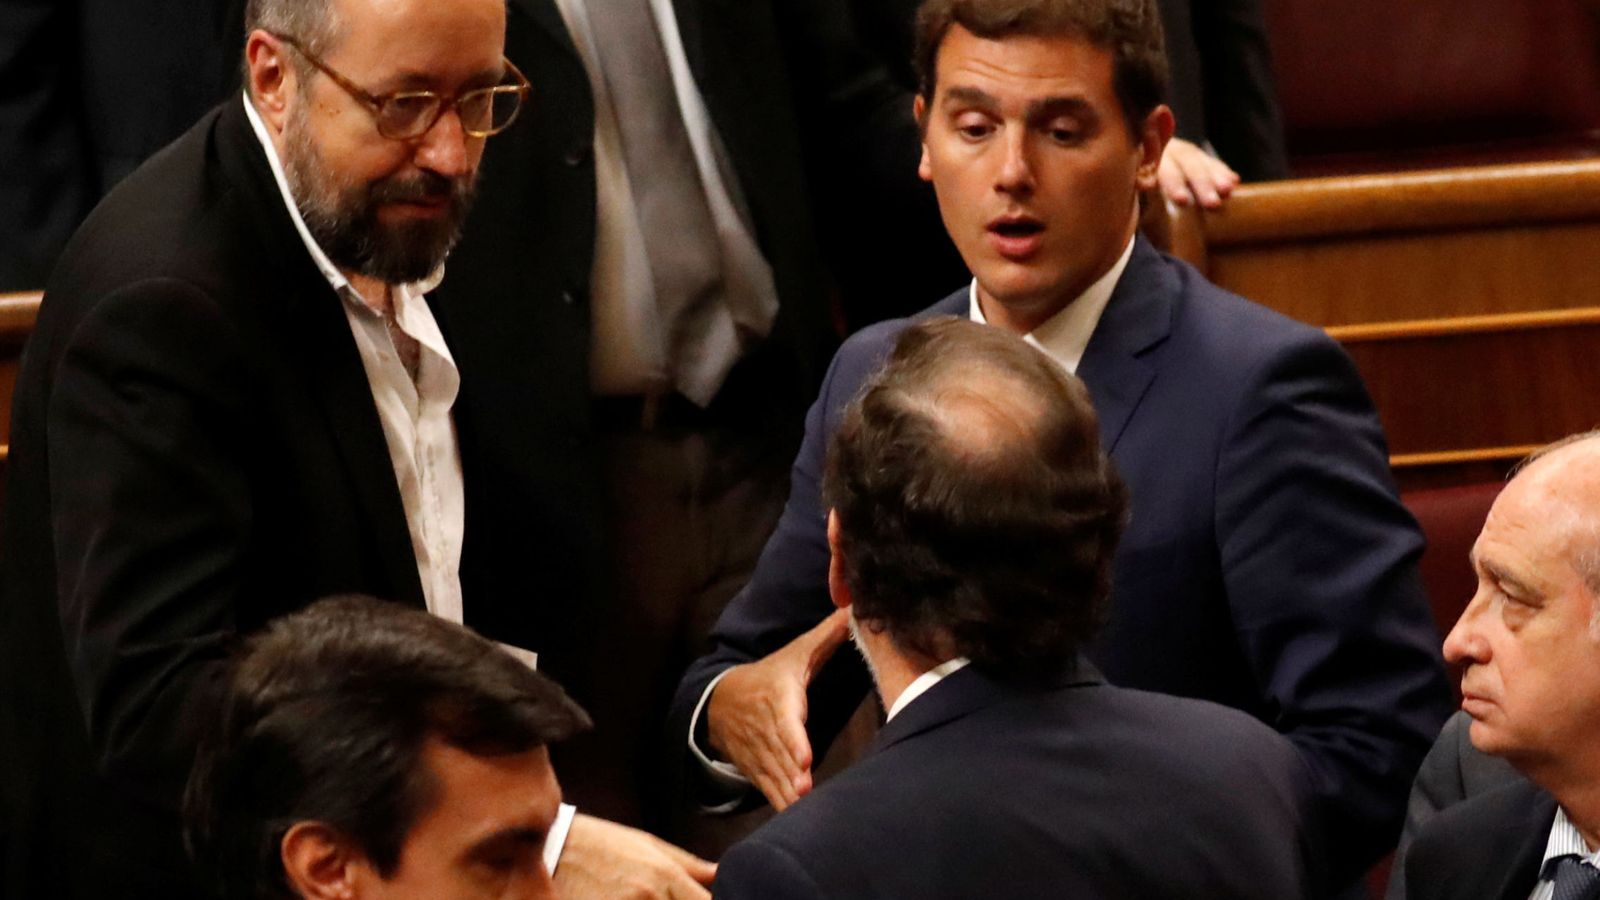 Foto: El portavoz de Ciudadanos en el Congreso, Juan Carlos Girauta, Albert Rivera y Mariano Rajoy conversan en el hemiciclo. (Reuters)